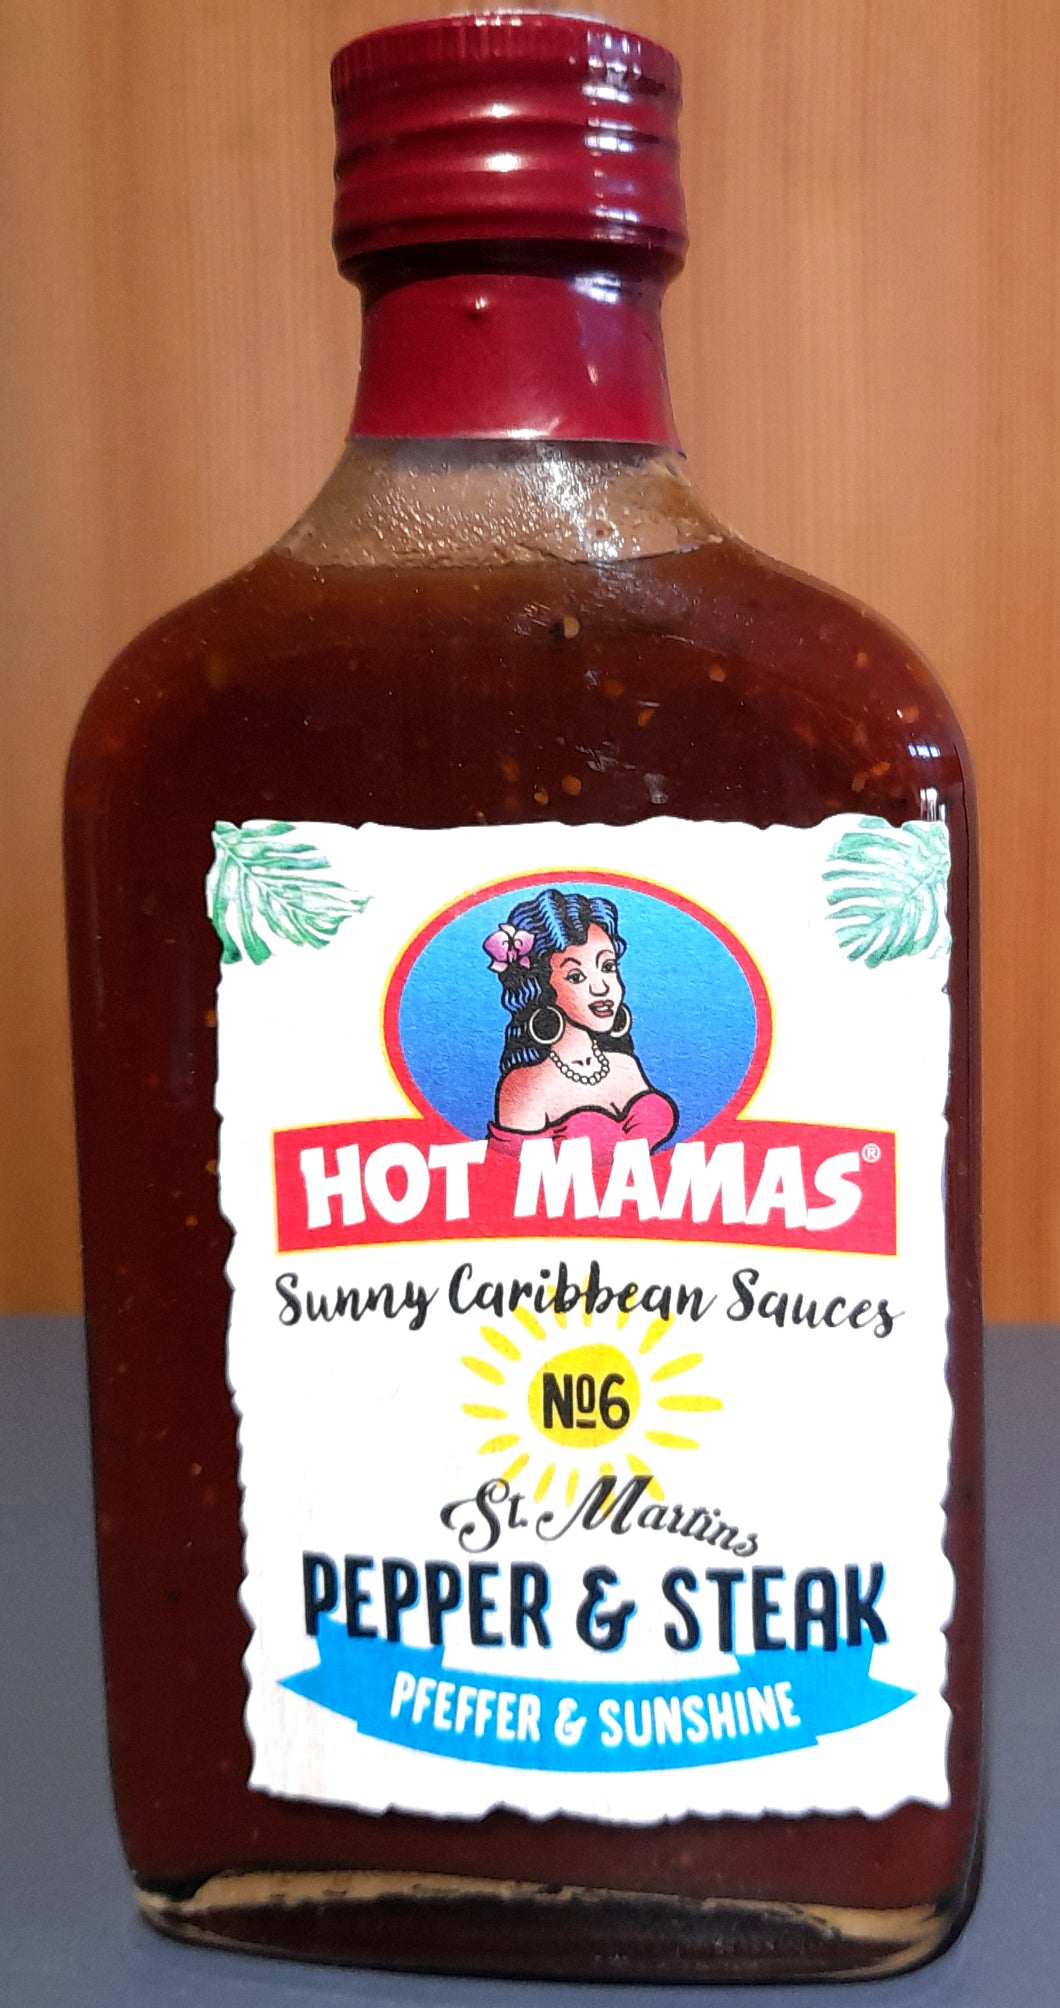 Hot Mamas St. Martins Pepper & Steak Sauce Info 